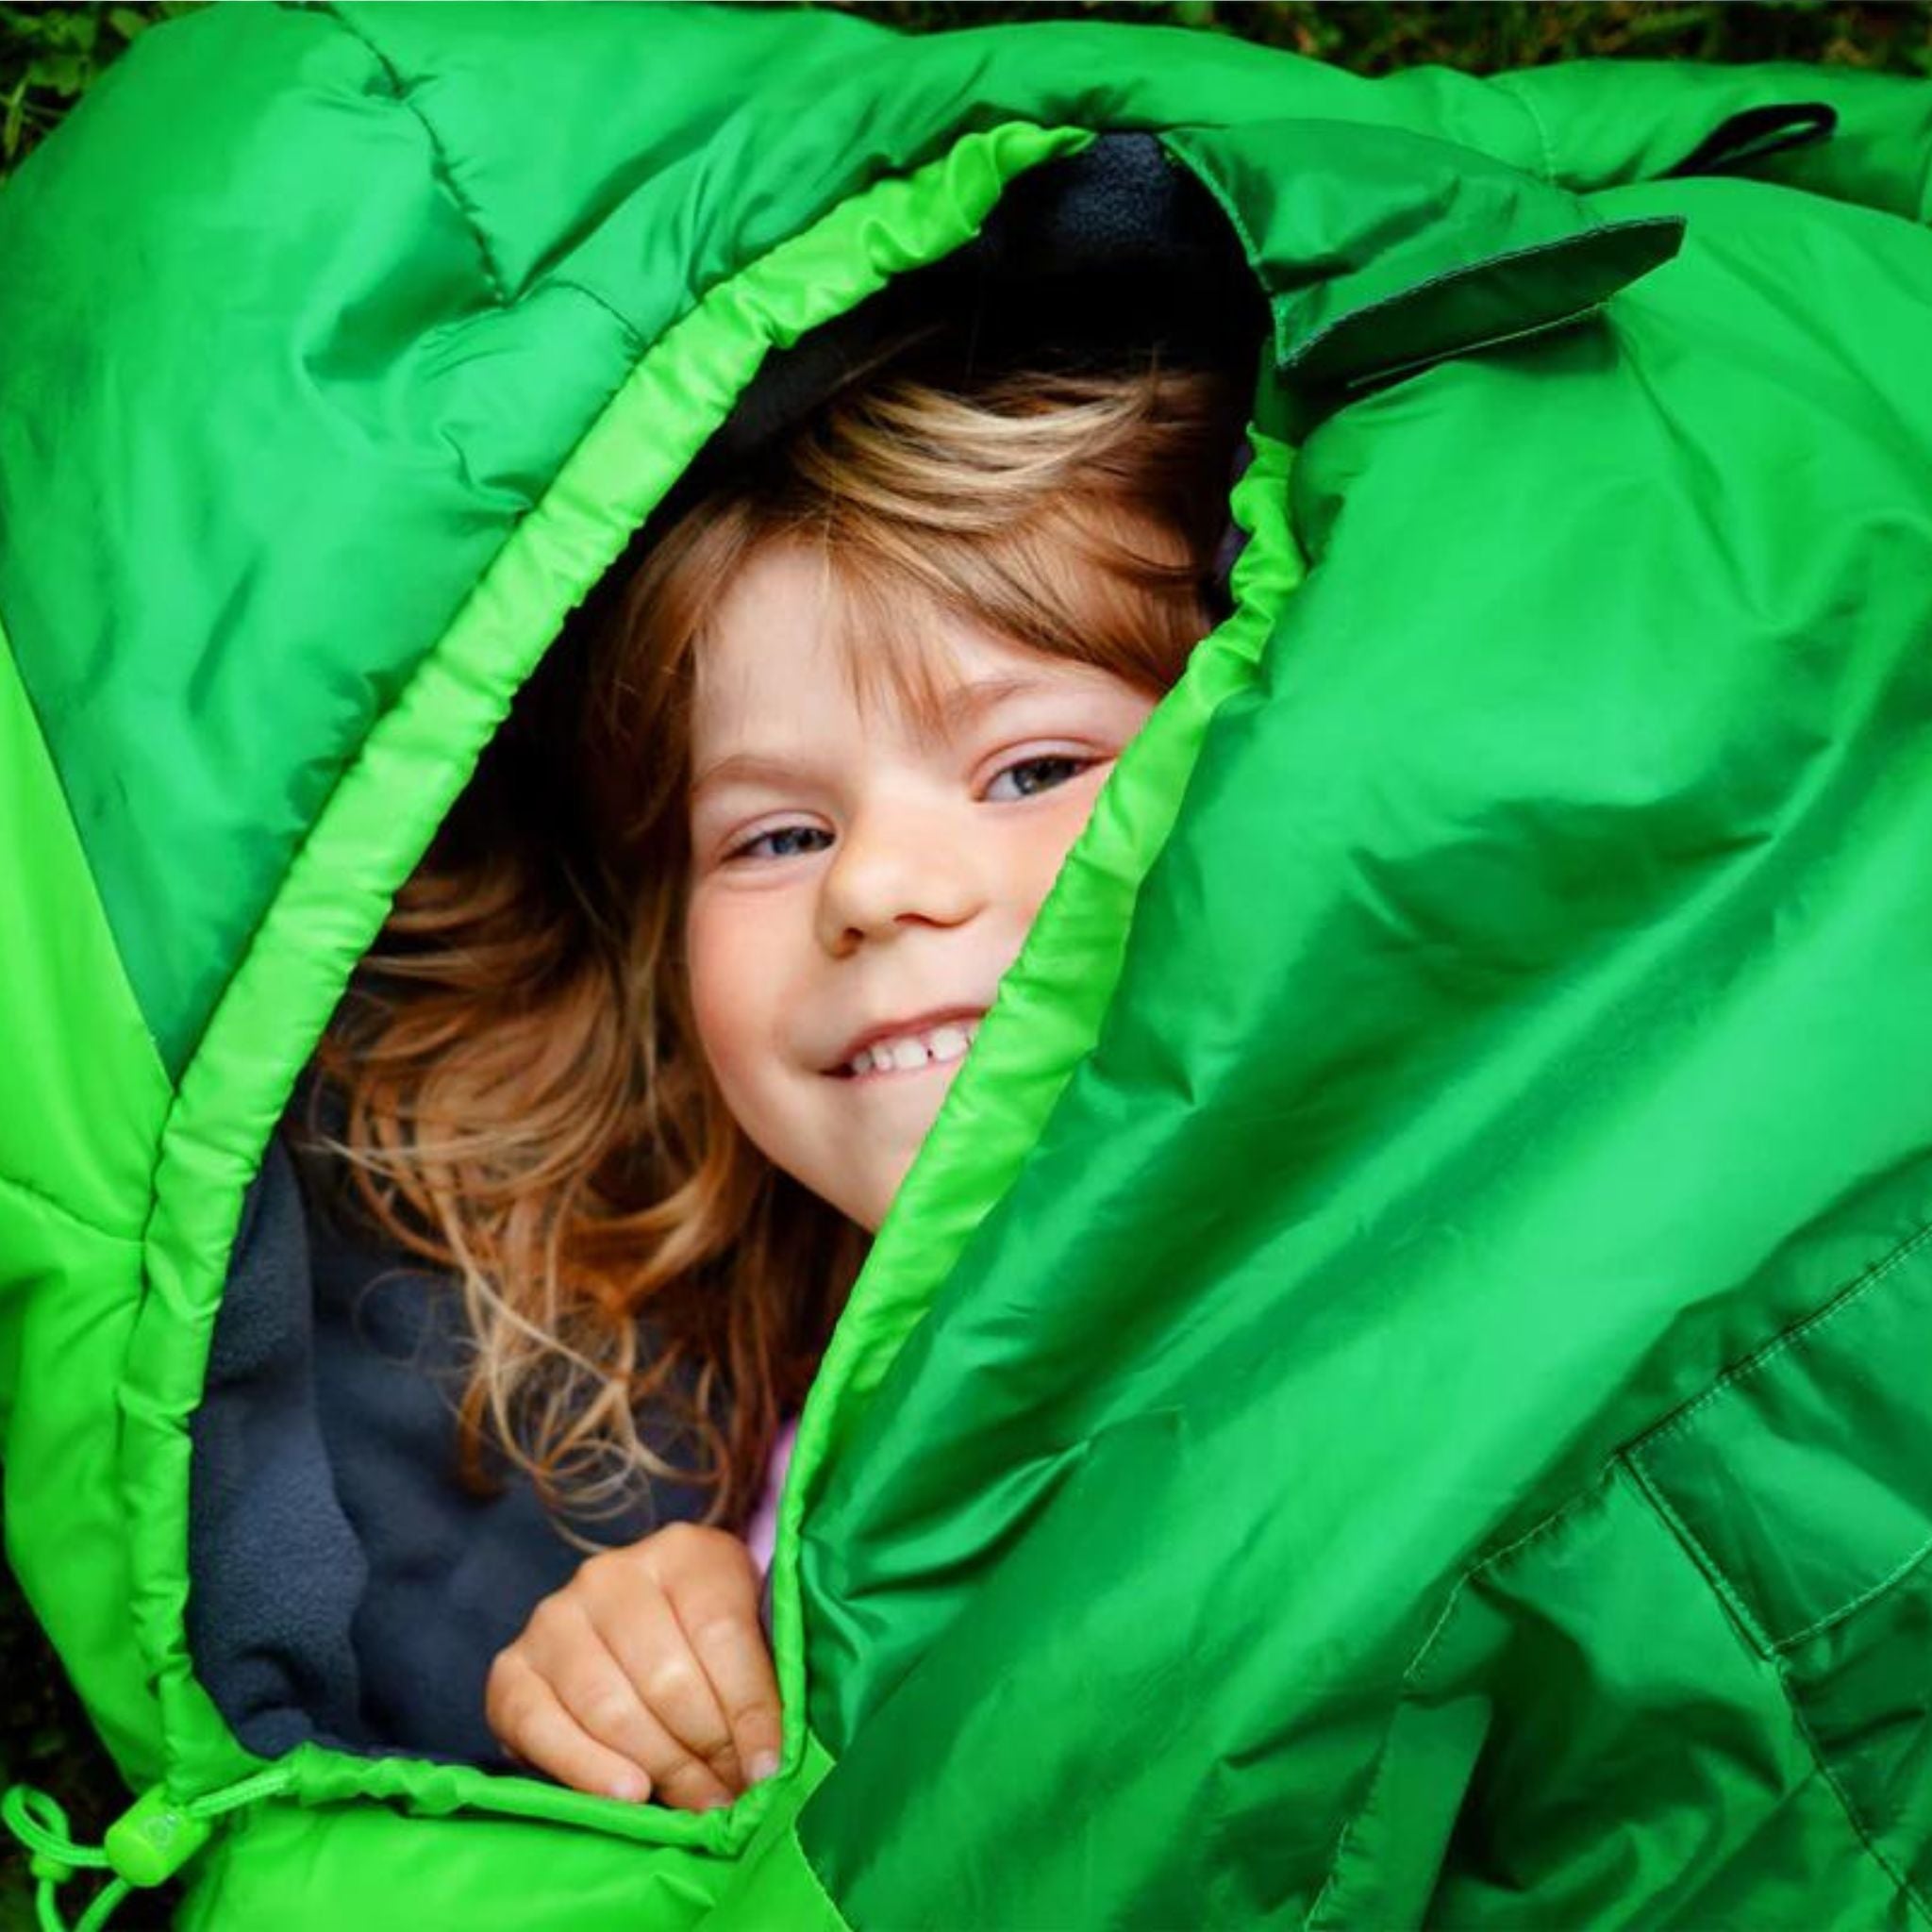 Kind in Schlafsack. Übernachten auf Trampolin.